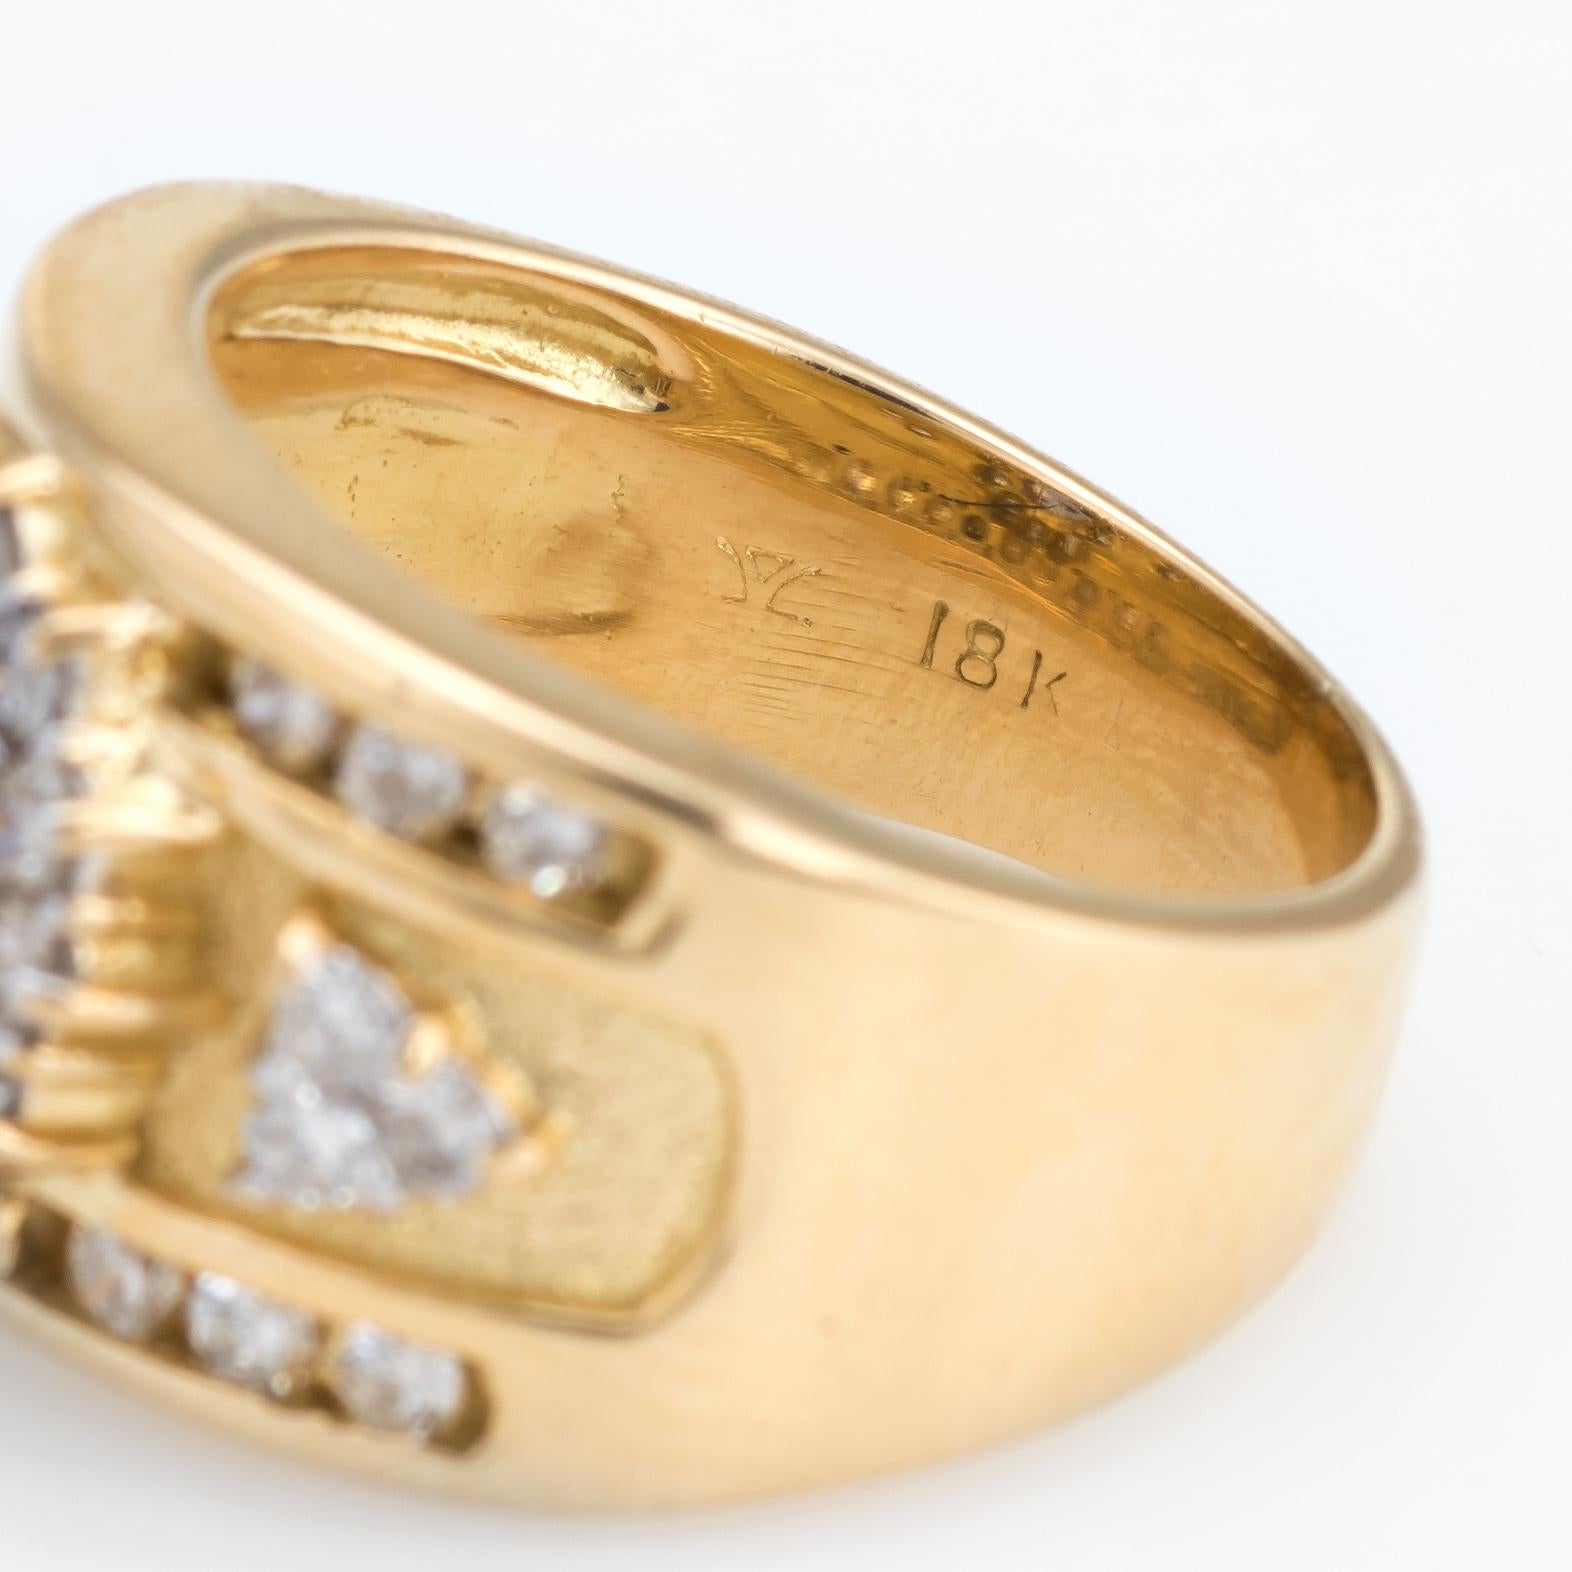 Vintage Tanzanite Diamond Ring 18 Karat Yellow Gold Cigar Band Estate Jewelry 2